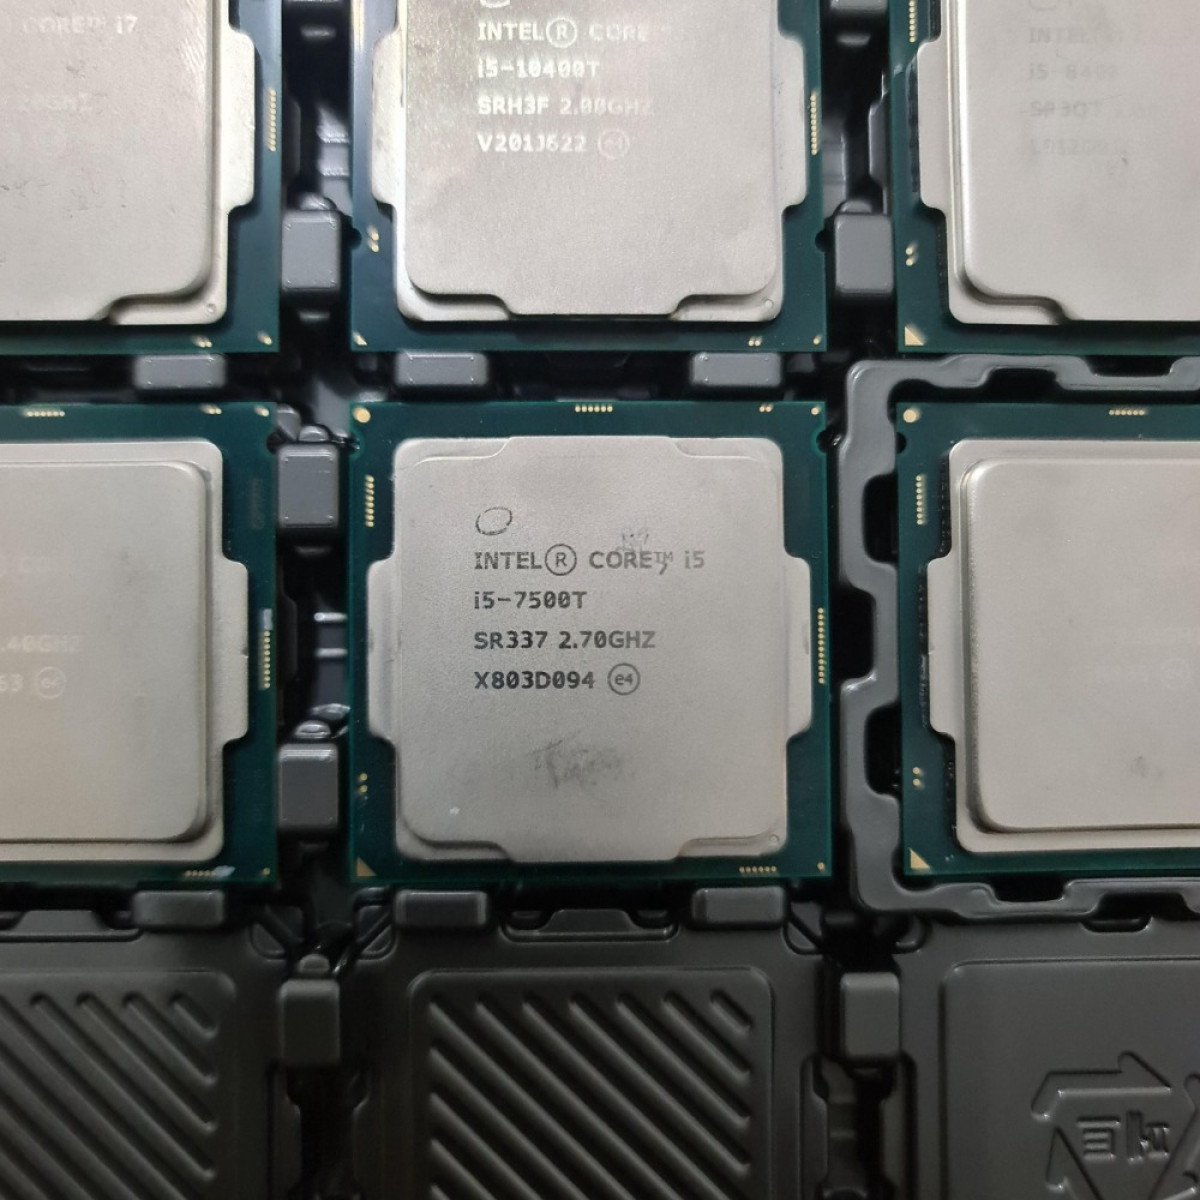 Intel Core i5-7500 T i5 7500T 4 Core 2.7 Turbo 3.3 GHz LGA1151